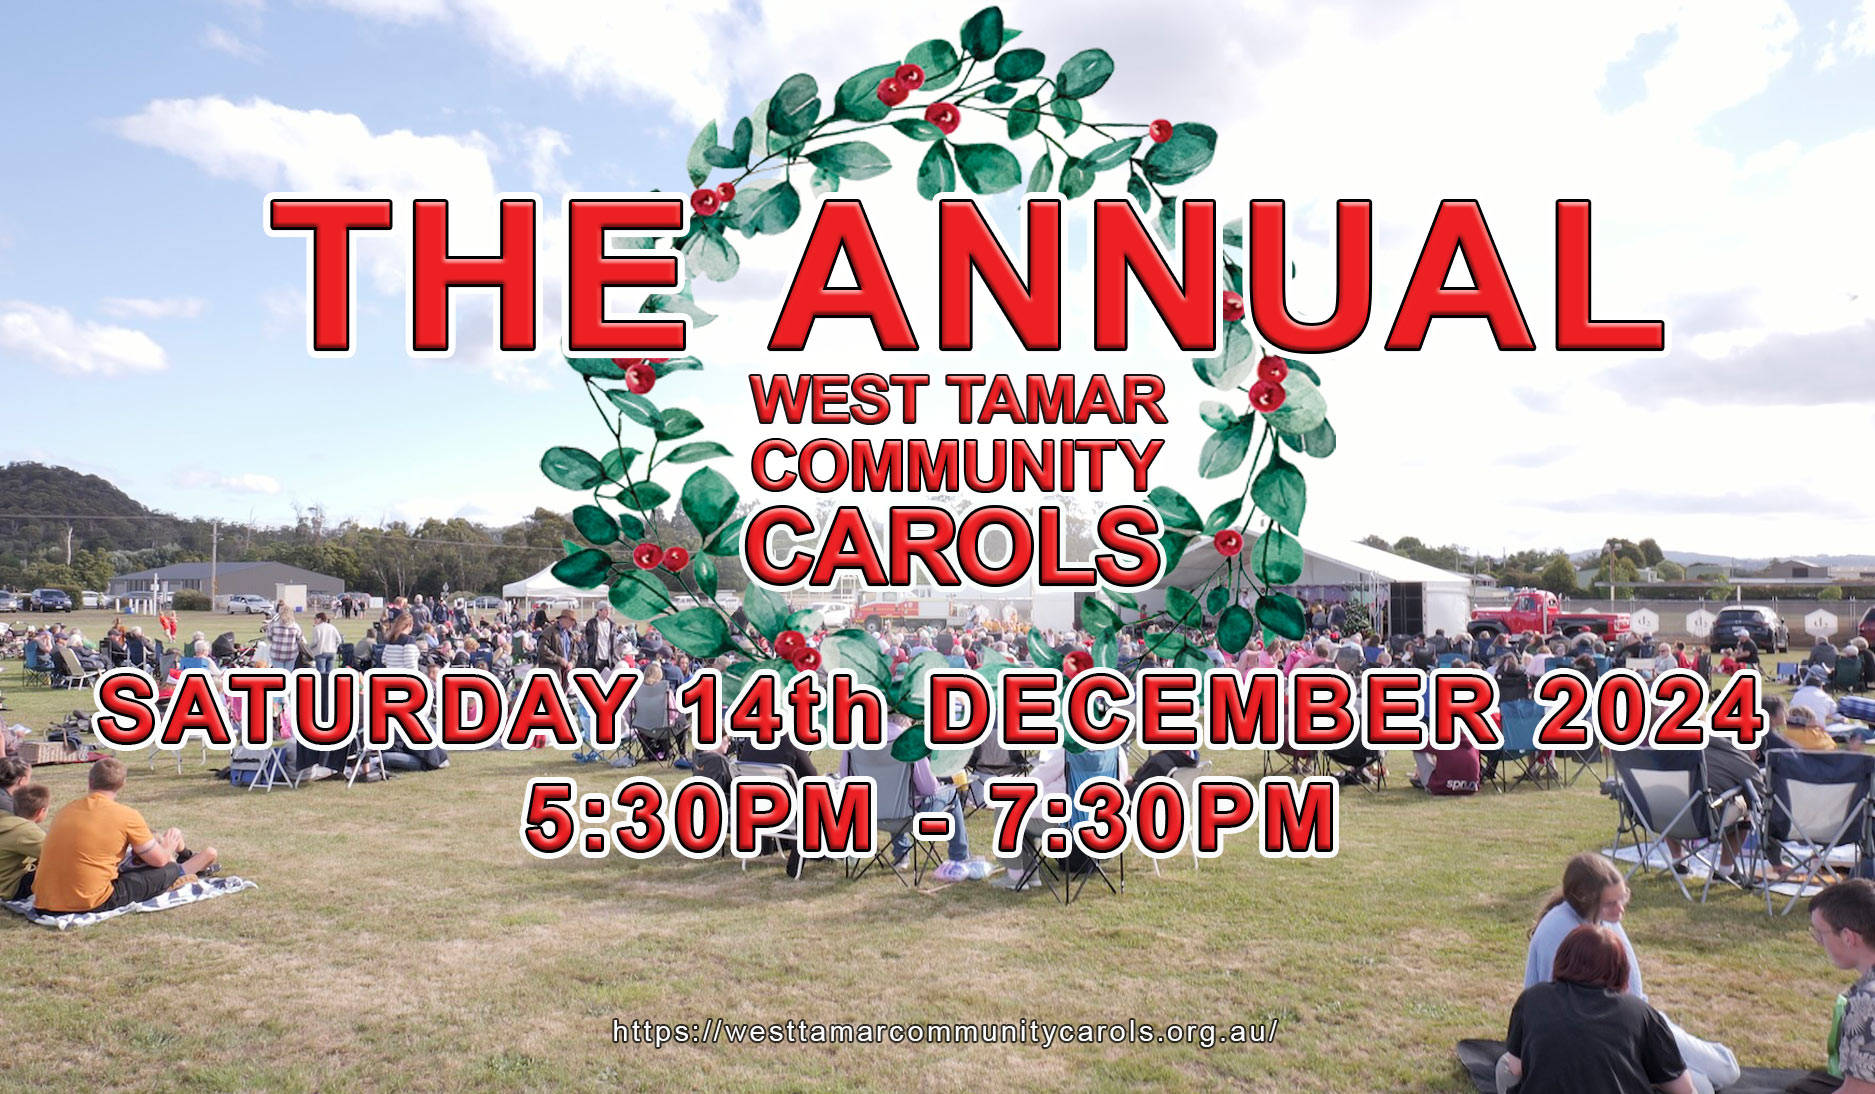 2023 West Tamar Community Carols, Saturday 16th December